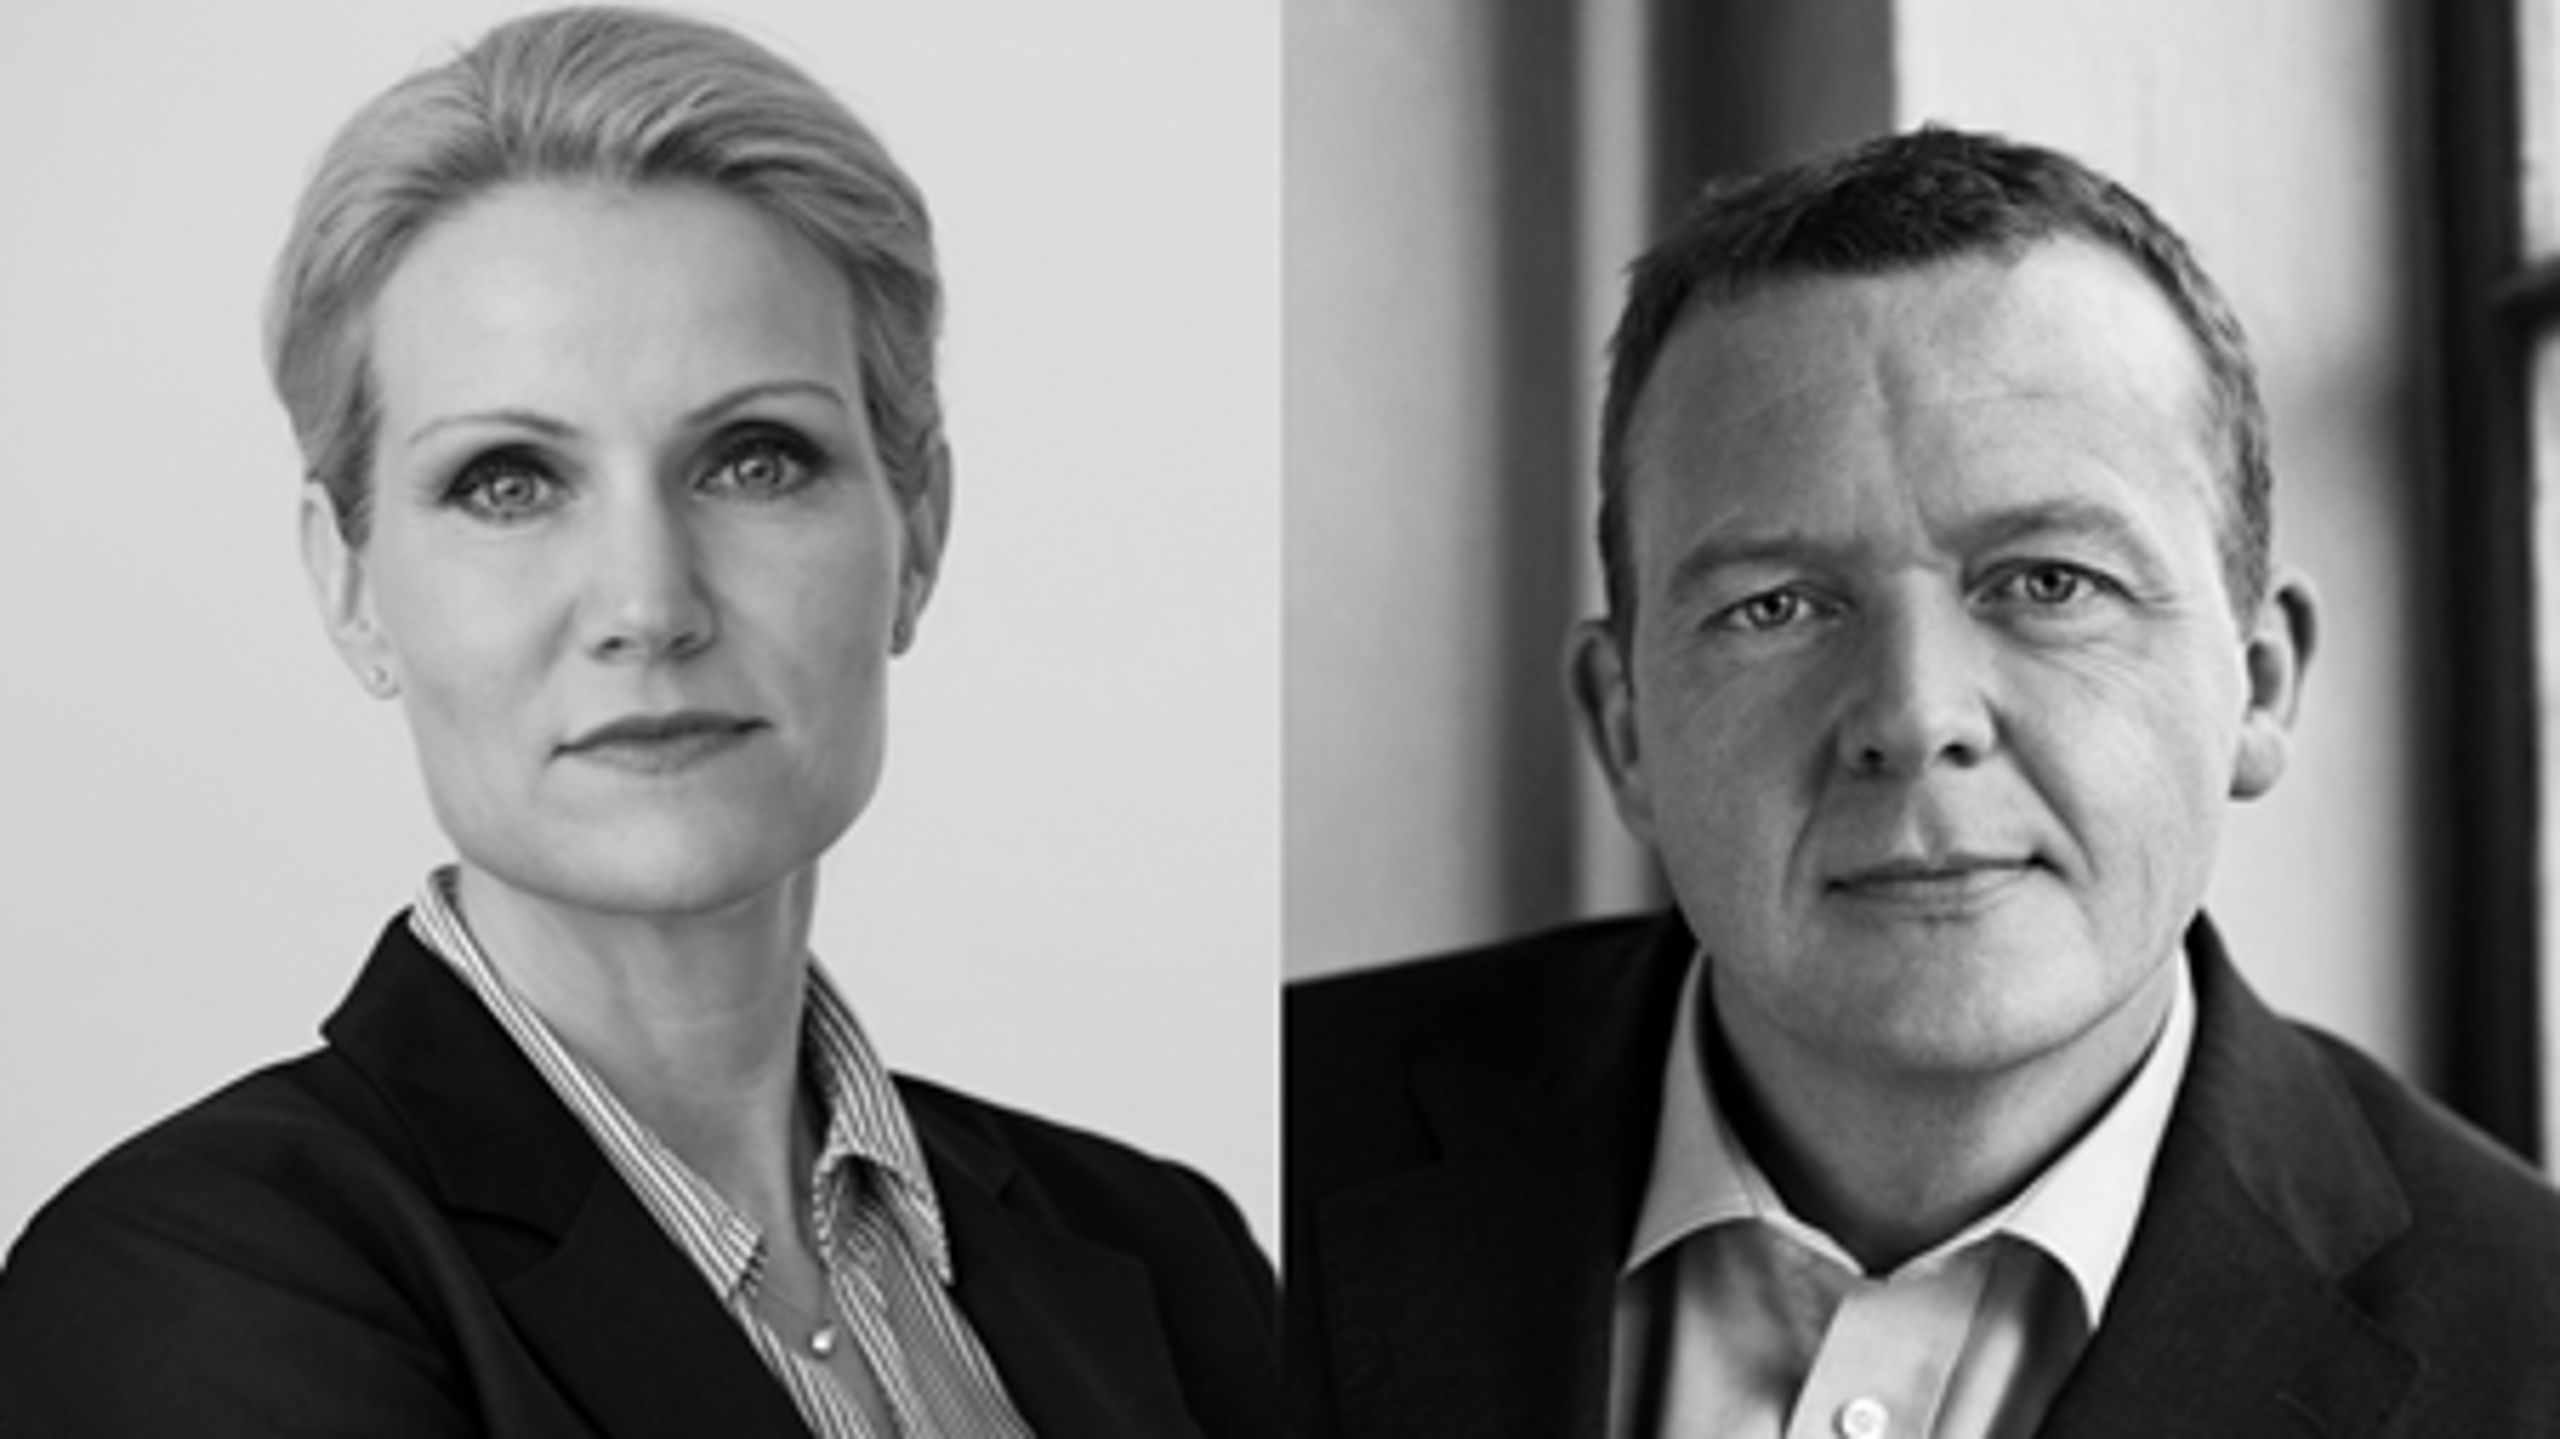 Aldrig har Helle Thorning-Schmidt været så langt bagefter Lars Løkke Rasmussen, som mere end dobbelt så mange foretrækker som statsminister.